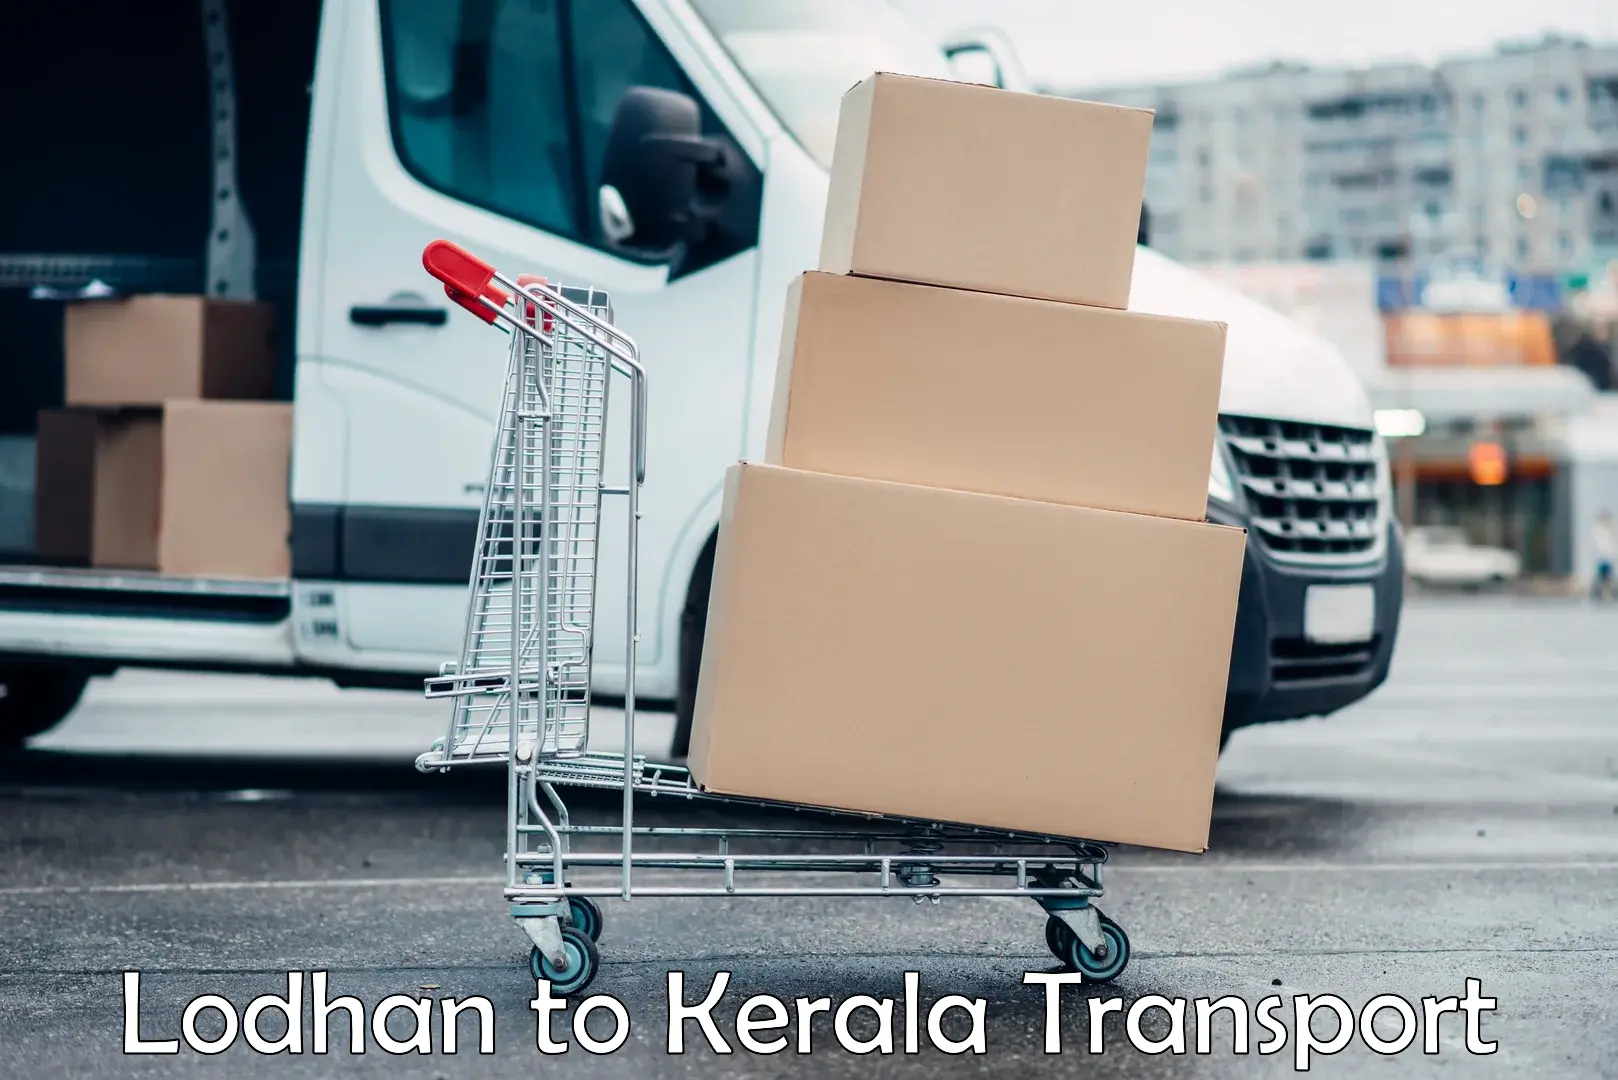 Lorry transport service Lodhan to Karukachal